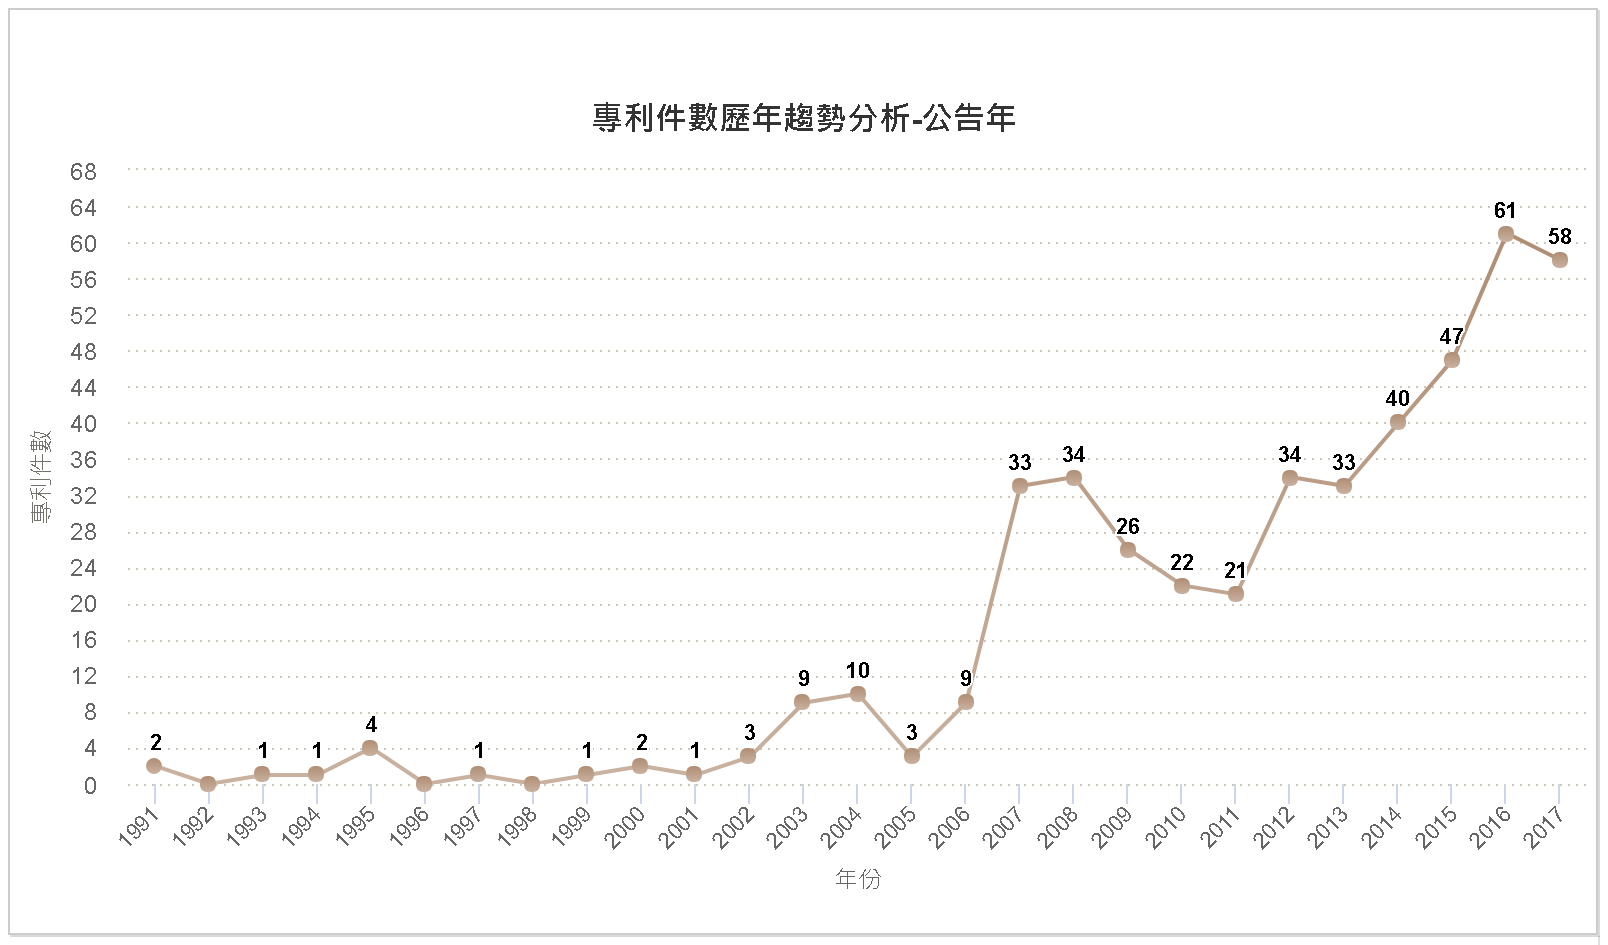 專利件數歷年趨勢分析圖–臺灣(公告年)